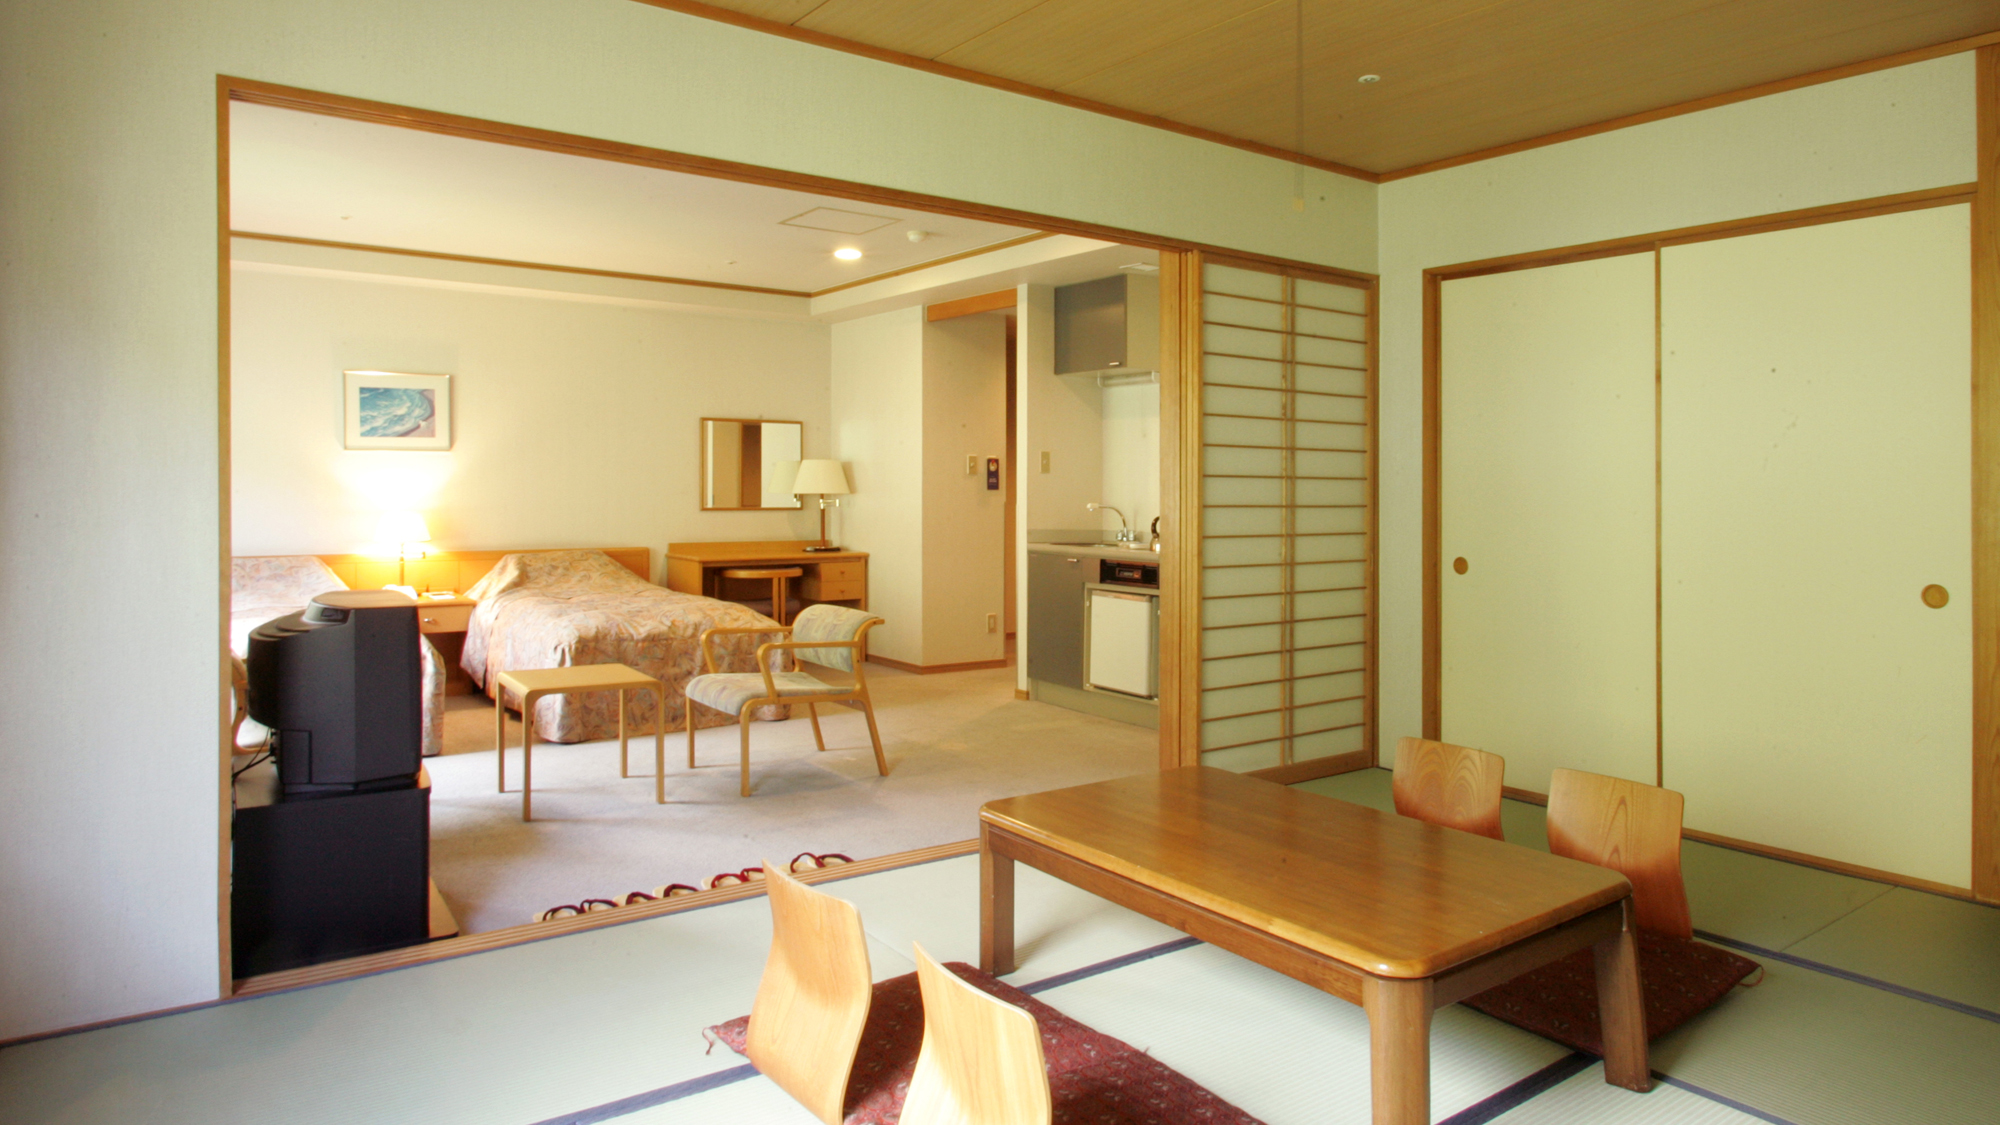 【デラックス和洋室】当ホテルでも人気のお部屋で、和室と洋間が一つになったお部屋です